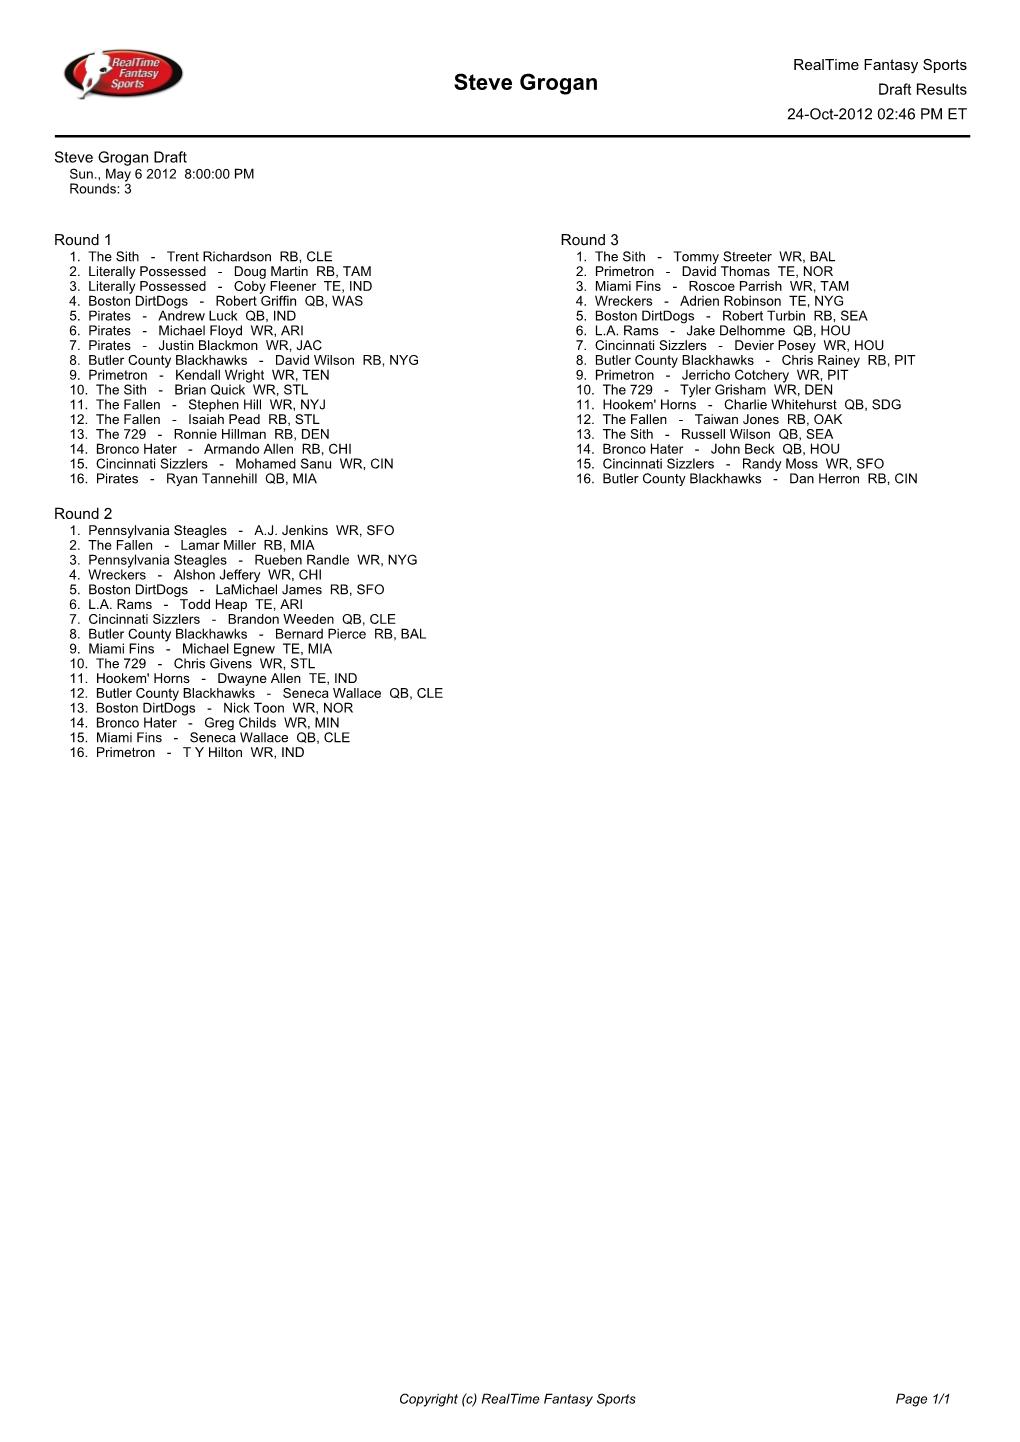 Steve Grogan Draft Results 24-Oct-2012 02:46 PM ET